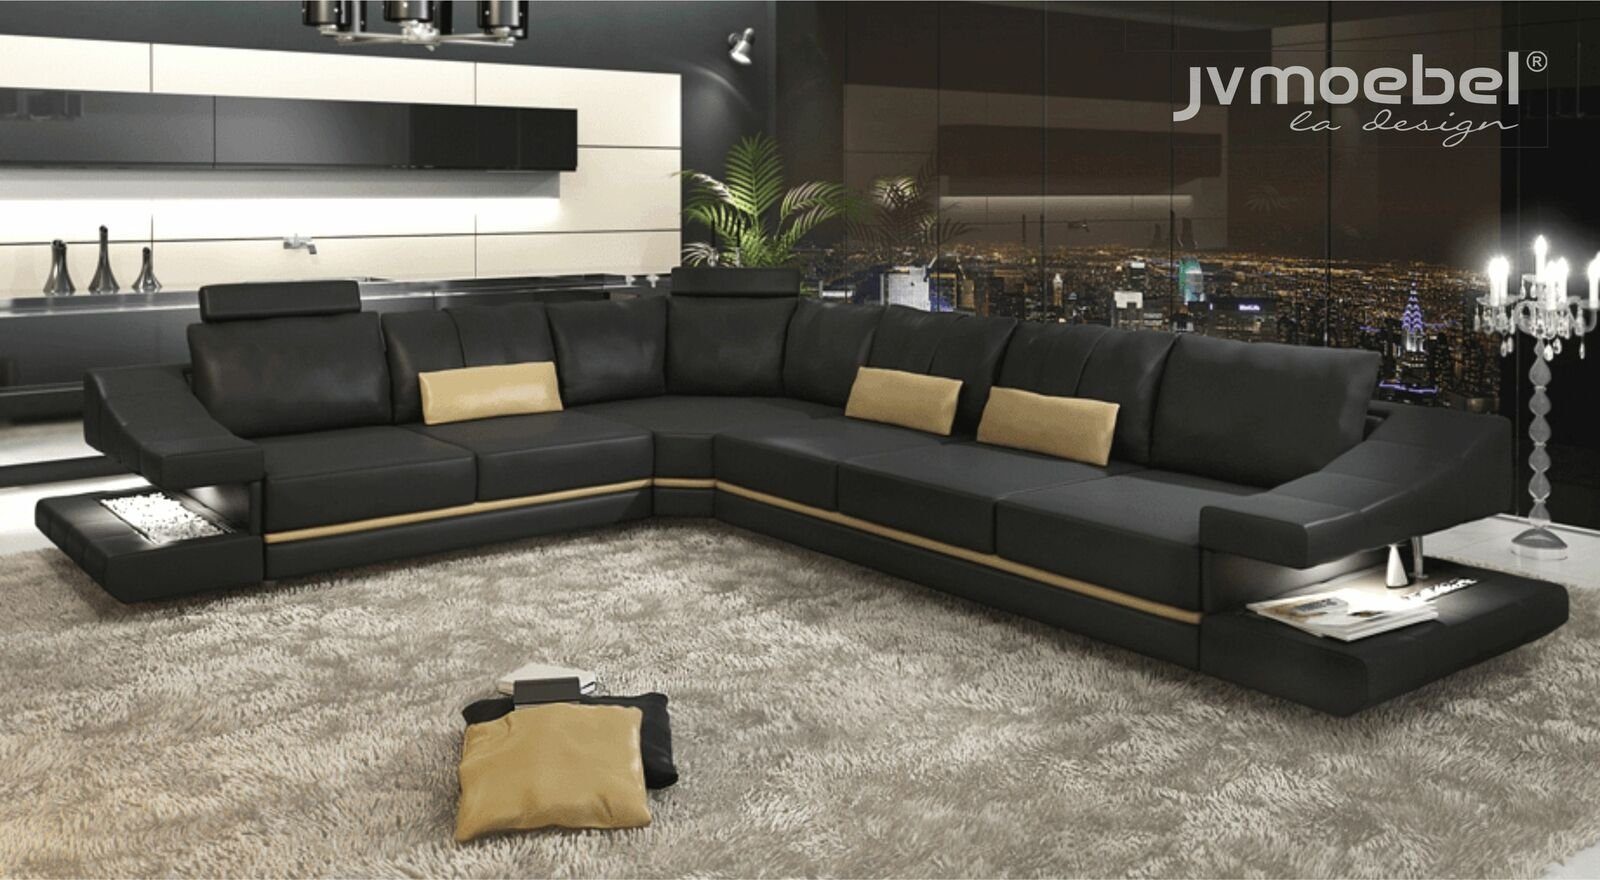 JVmoebel Ecksofa, Wohnzimmer Textil L-Form Sofas Schwarz NEU Ecksofa Couch